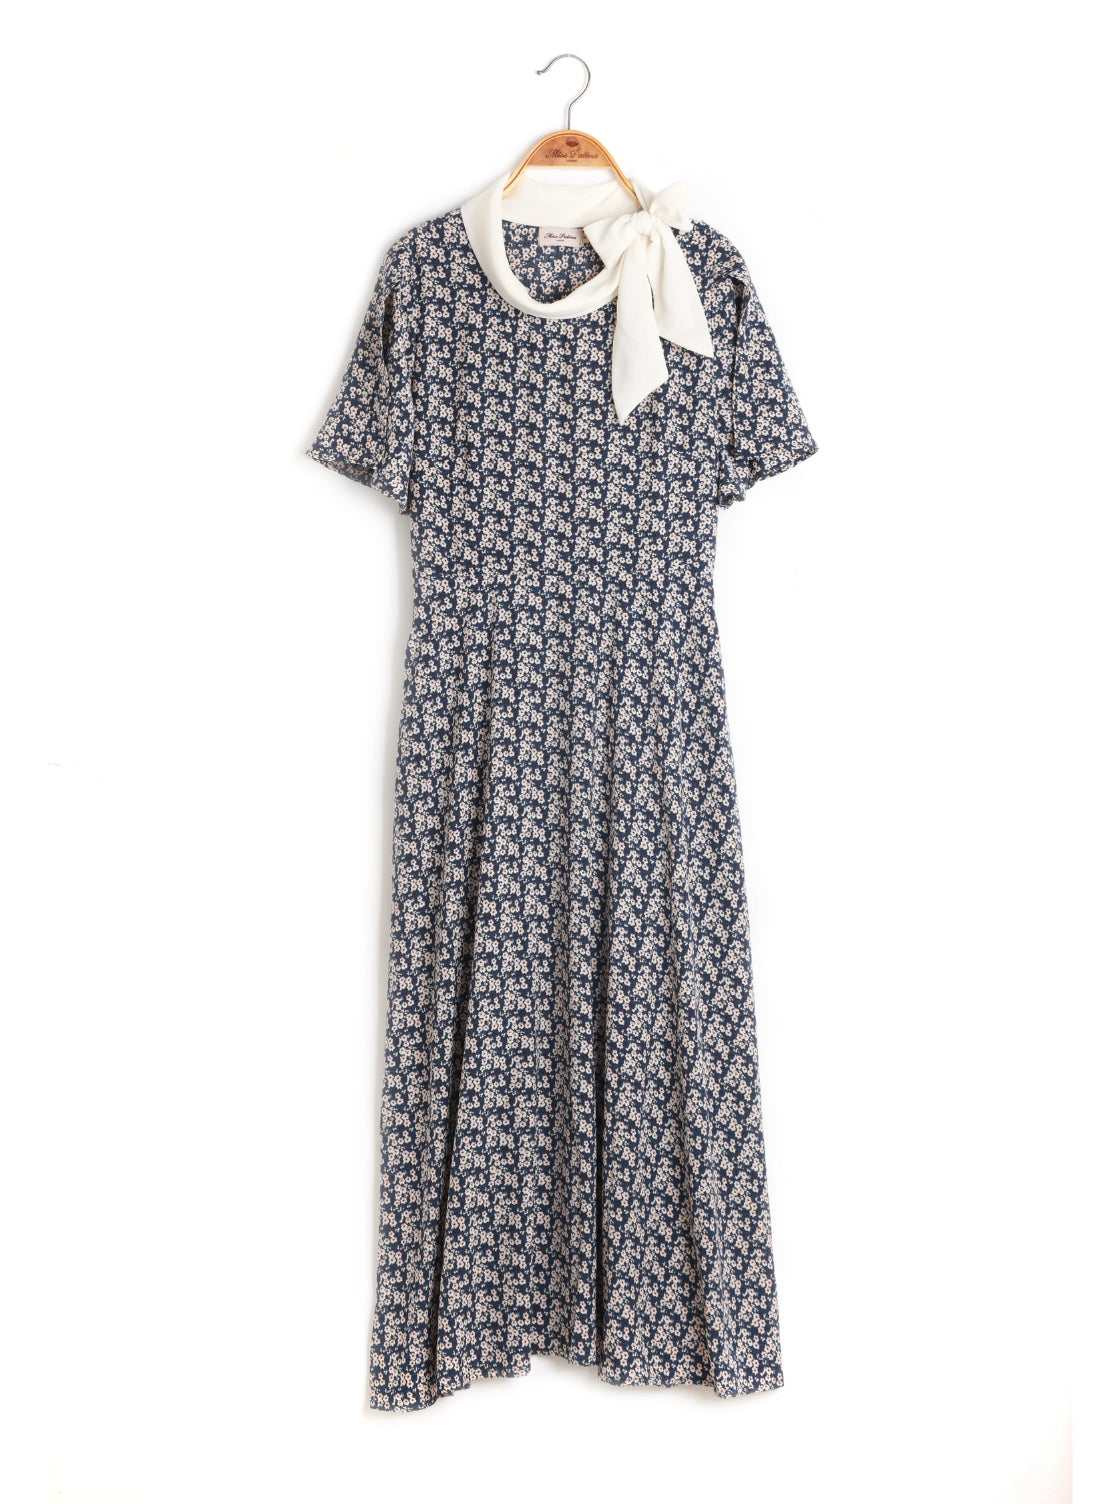 Claudette 1950’s Dress